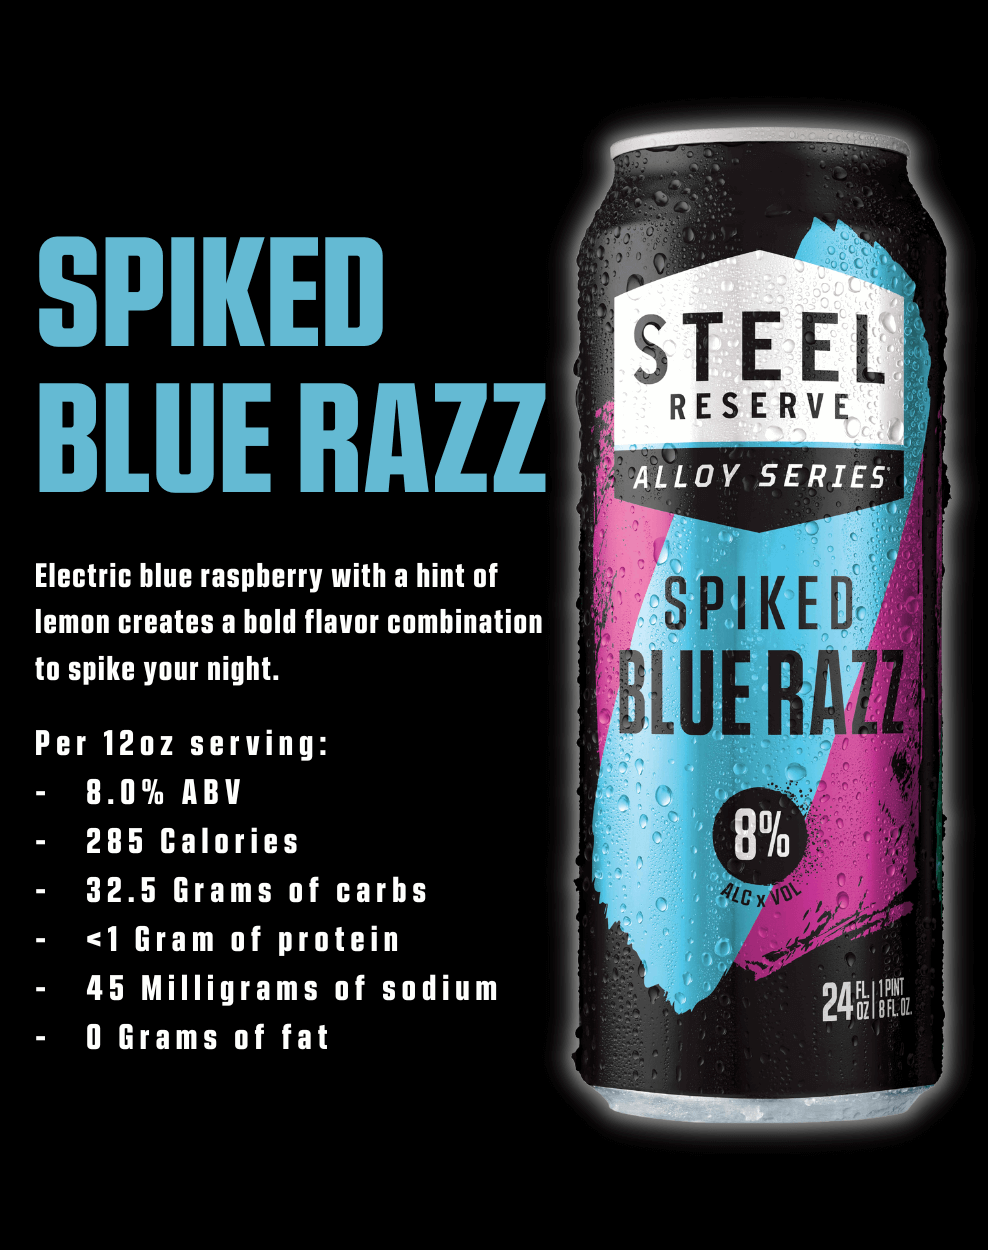 Spiked Blue Razz description